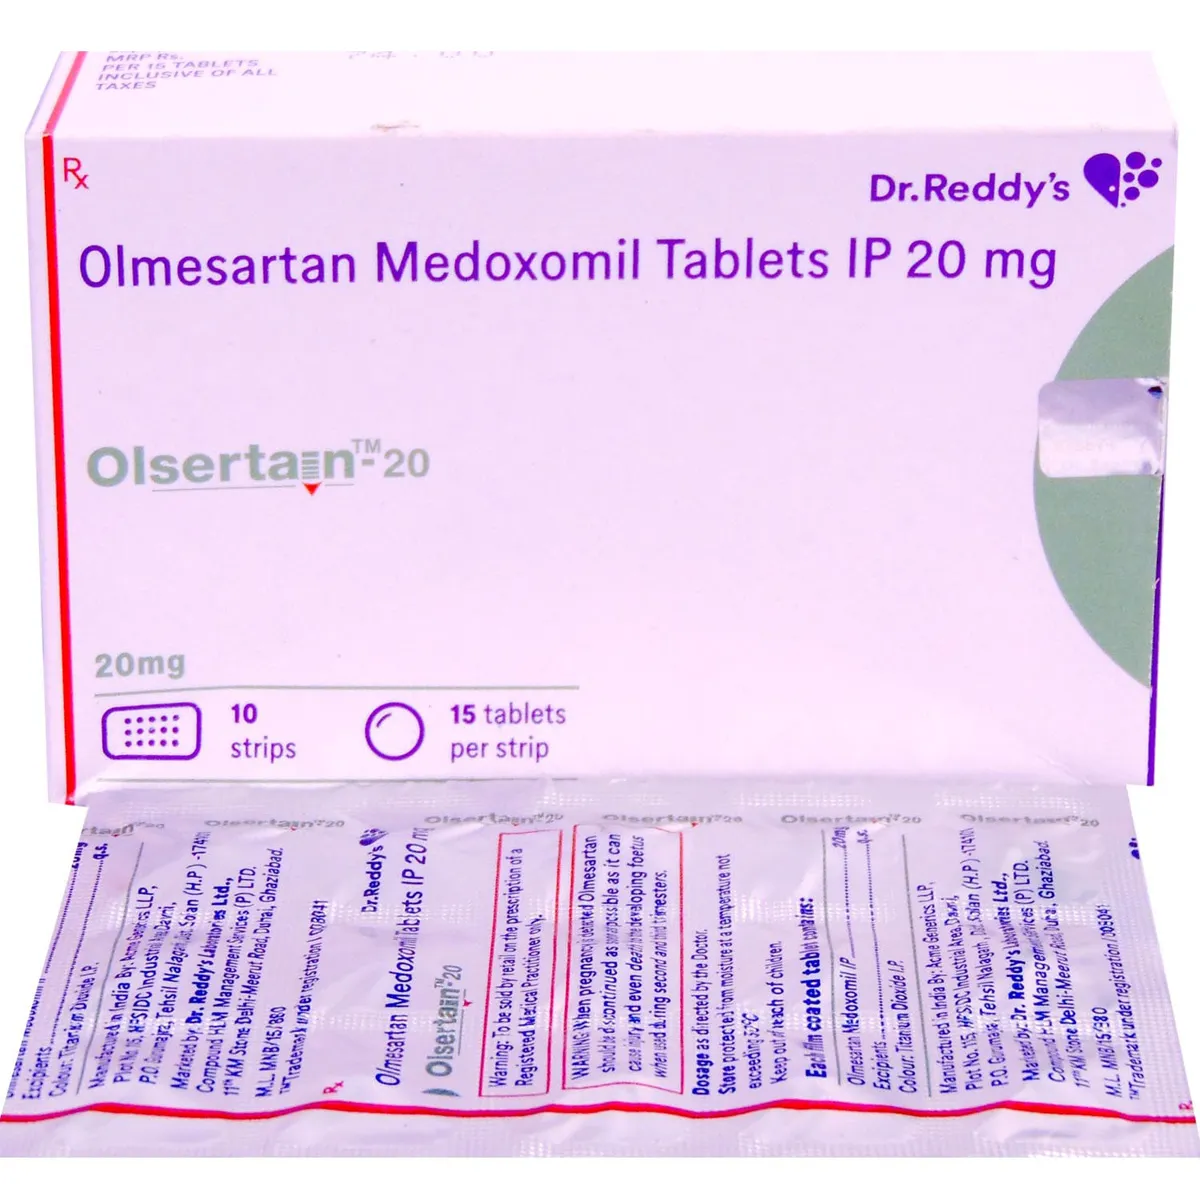 olsertain-20-tablet